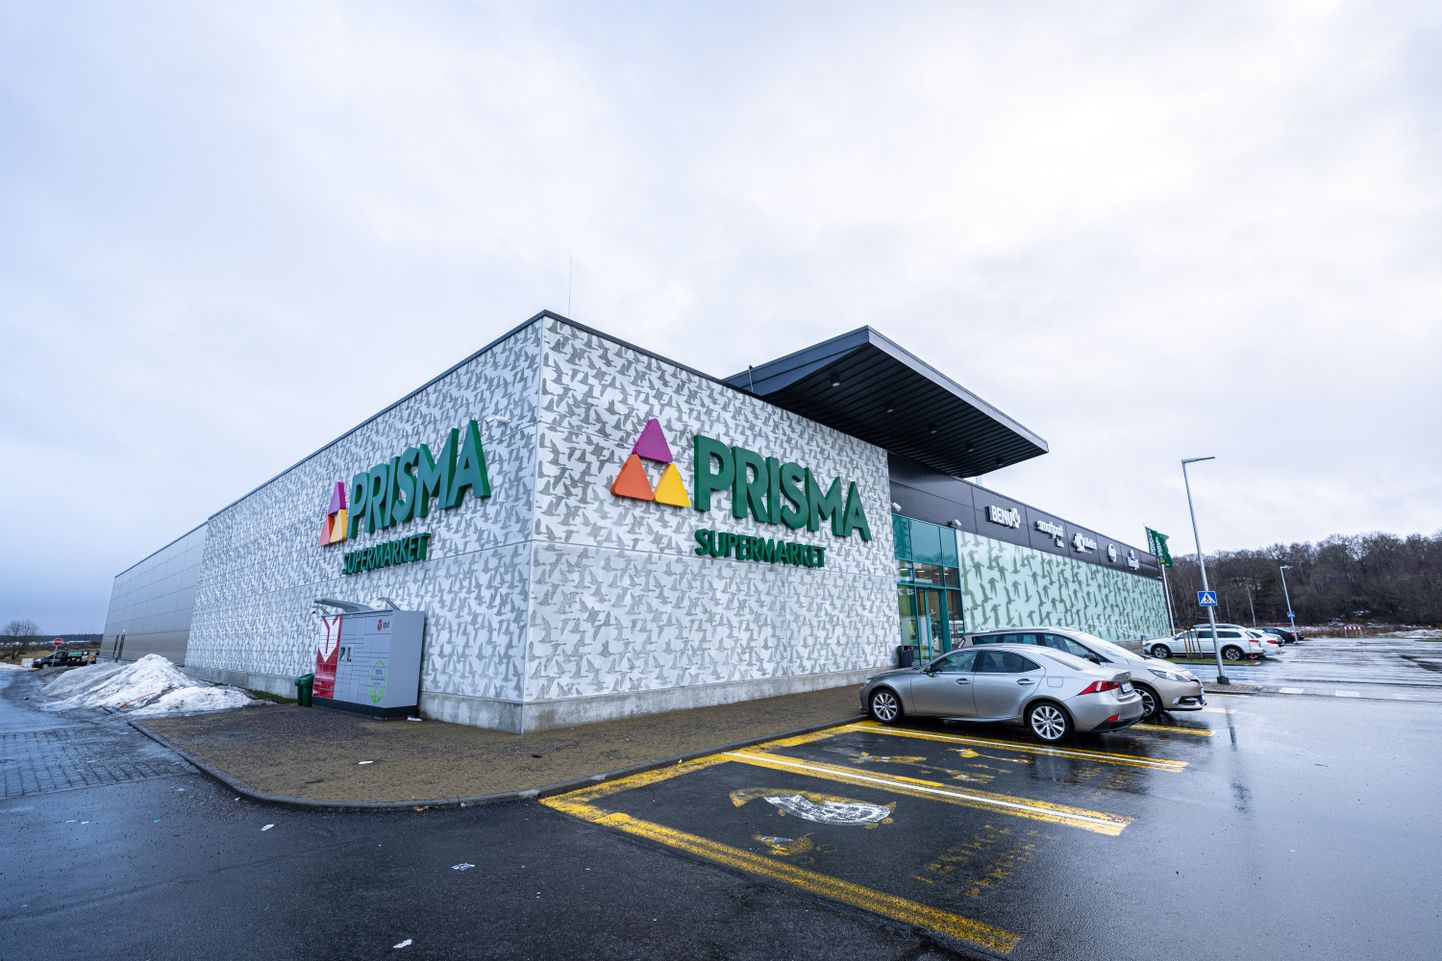 Prisma Supermarket Tiskres.